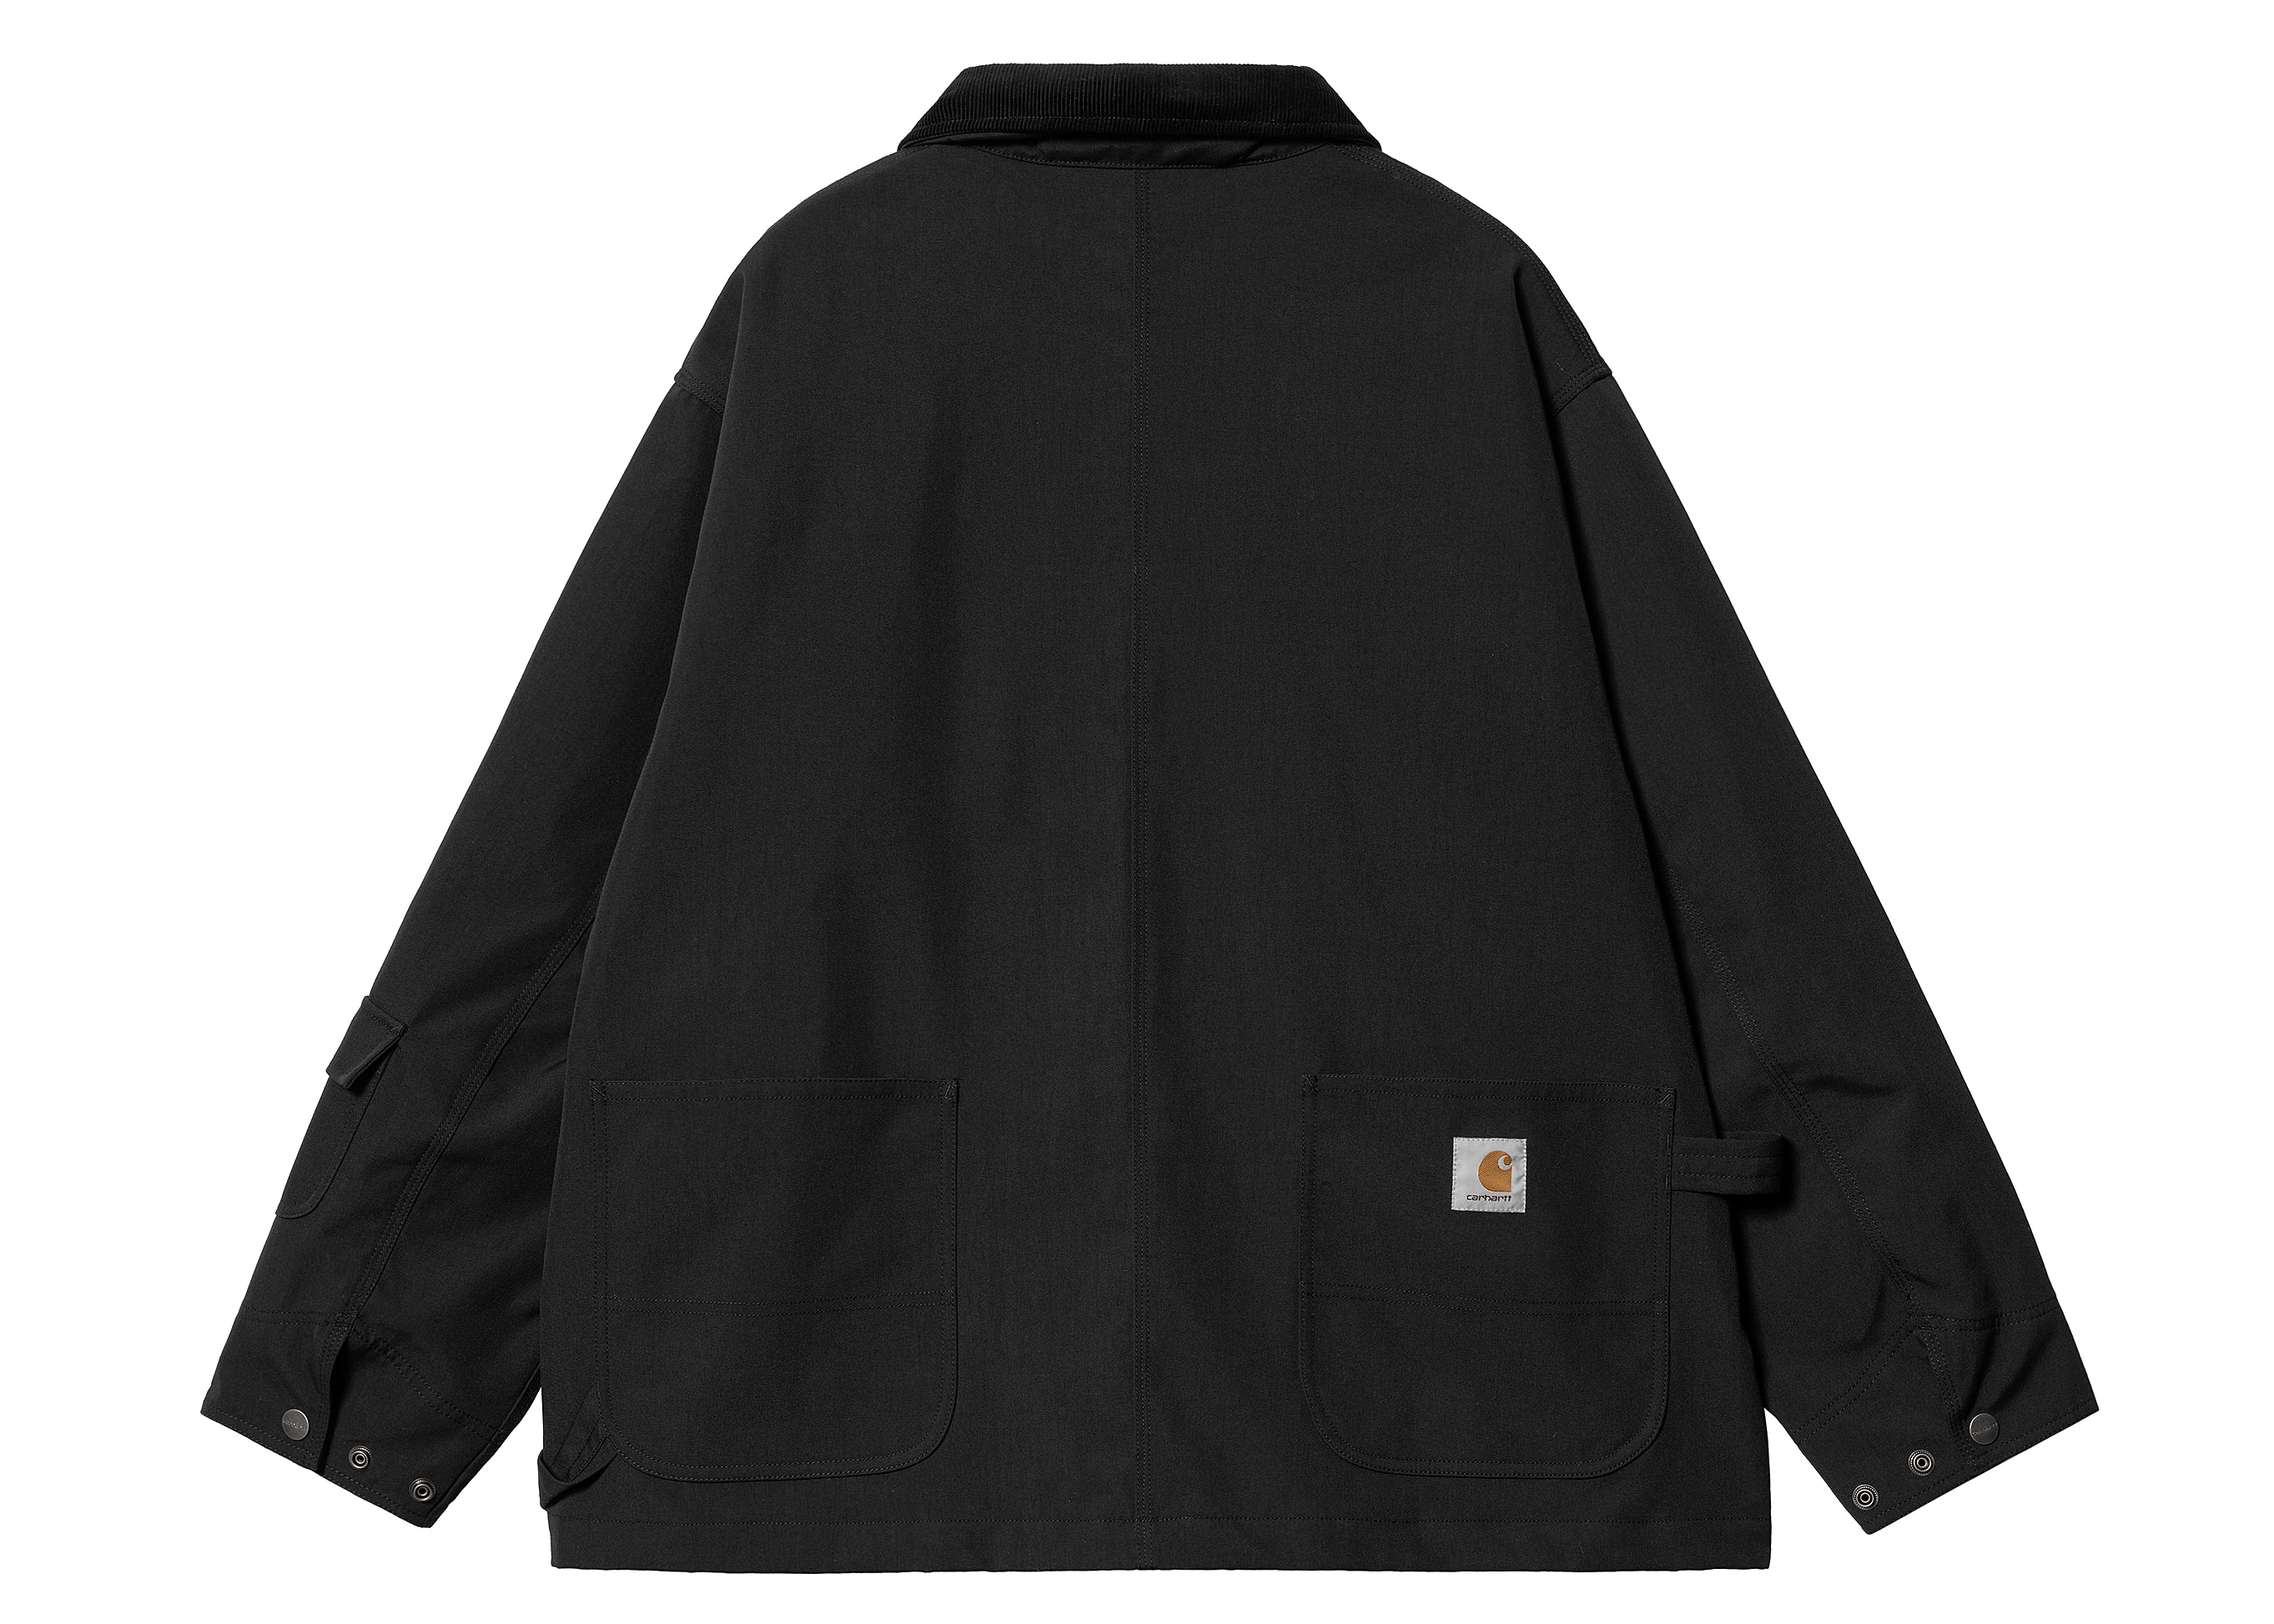 Carhartt WIP x Invincible Chore Coat Black